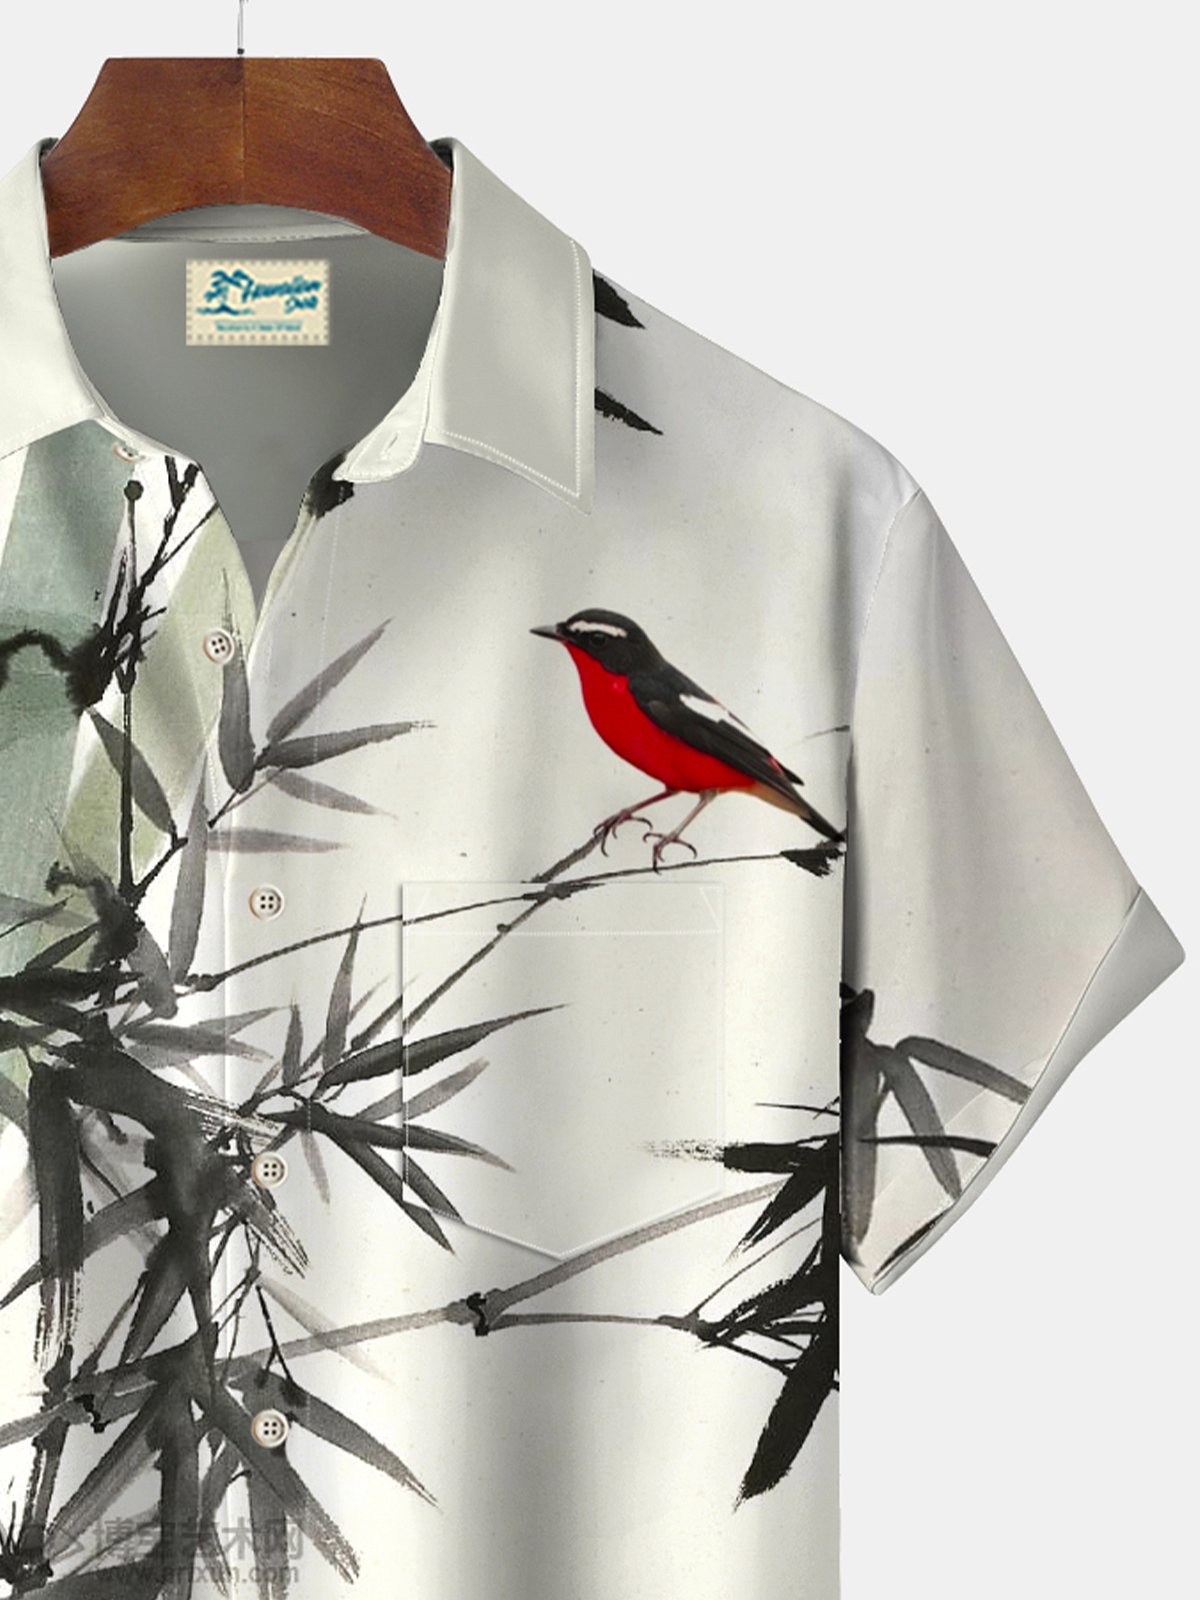 JoyMitty Plant Bamboo Bird Print Beach Men's Hawaiian Oversized Shirt With Pocket